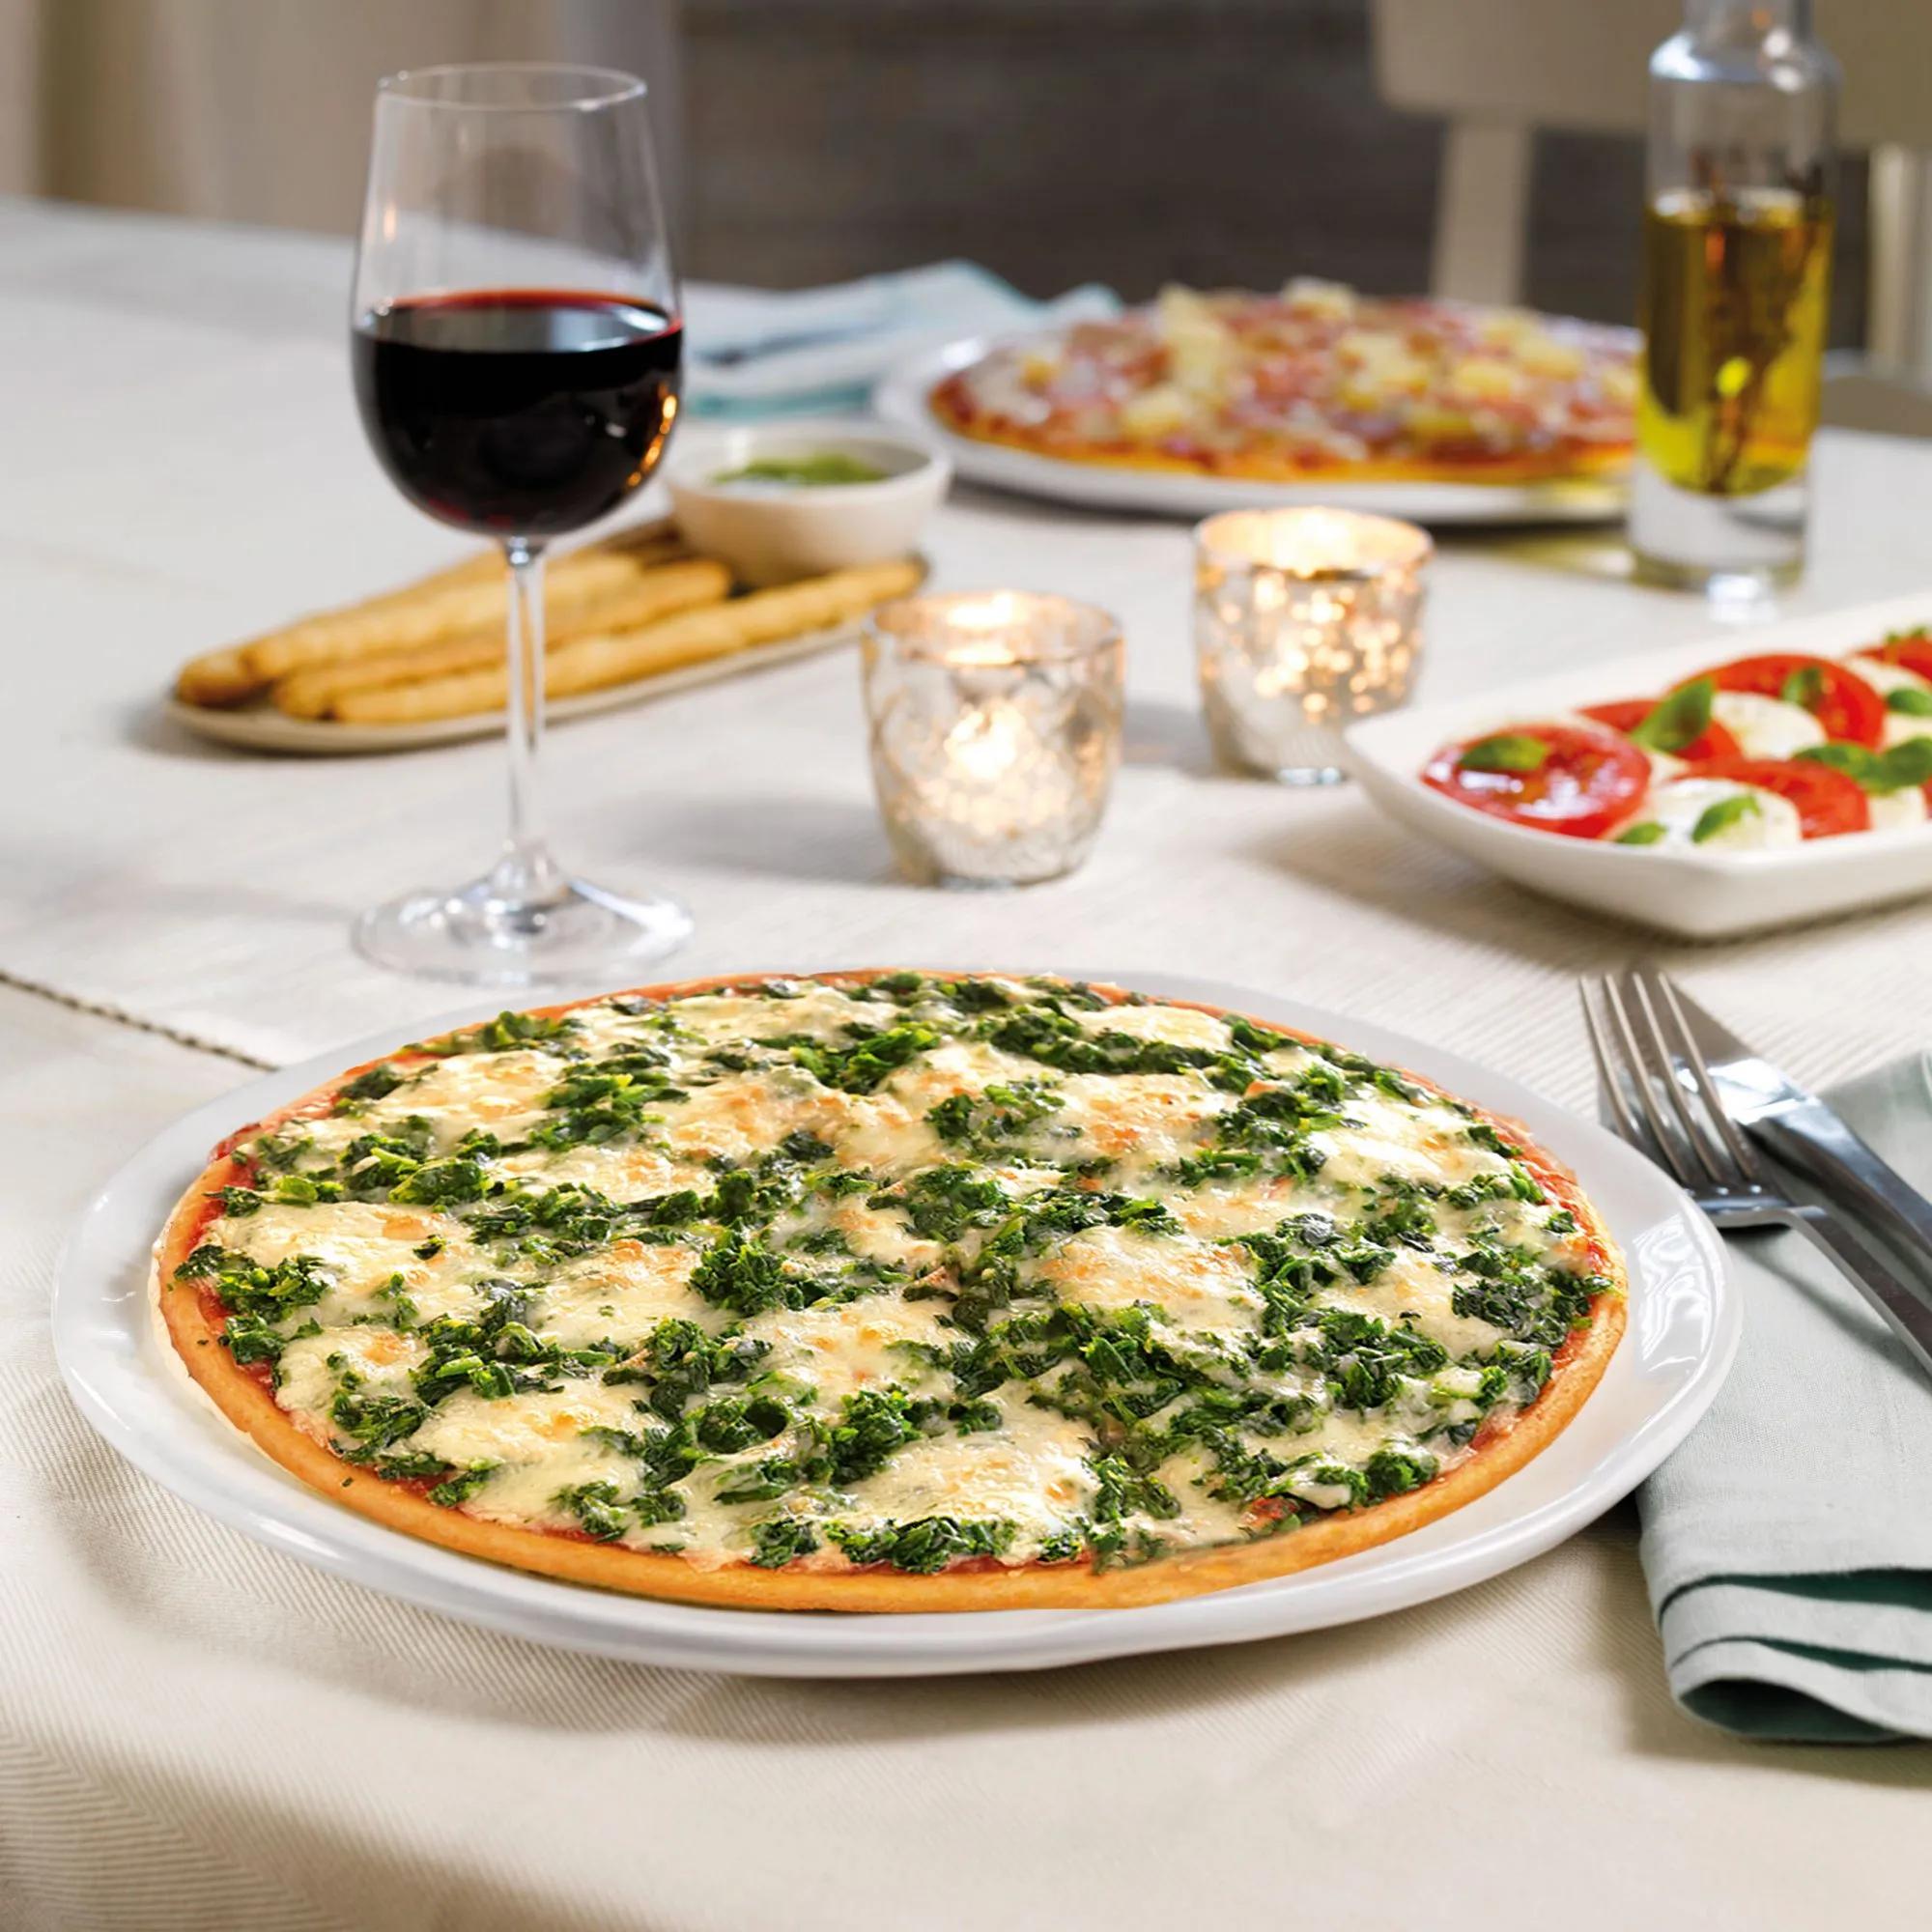 Dr Oetker Ristorante Spinaci Pizza Review- Veggie LAD